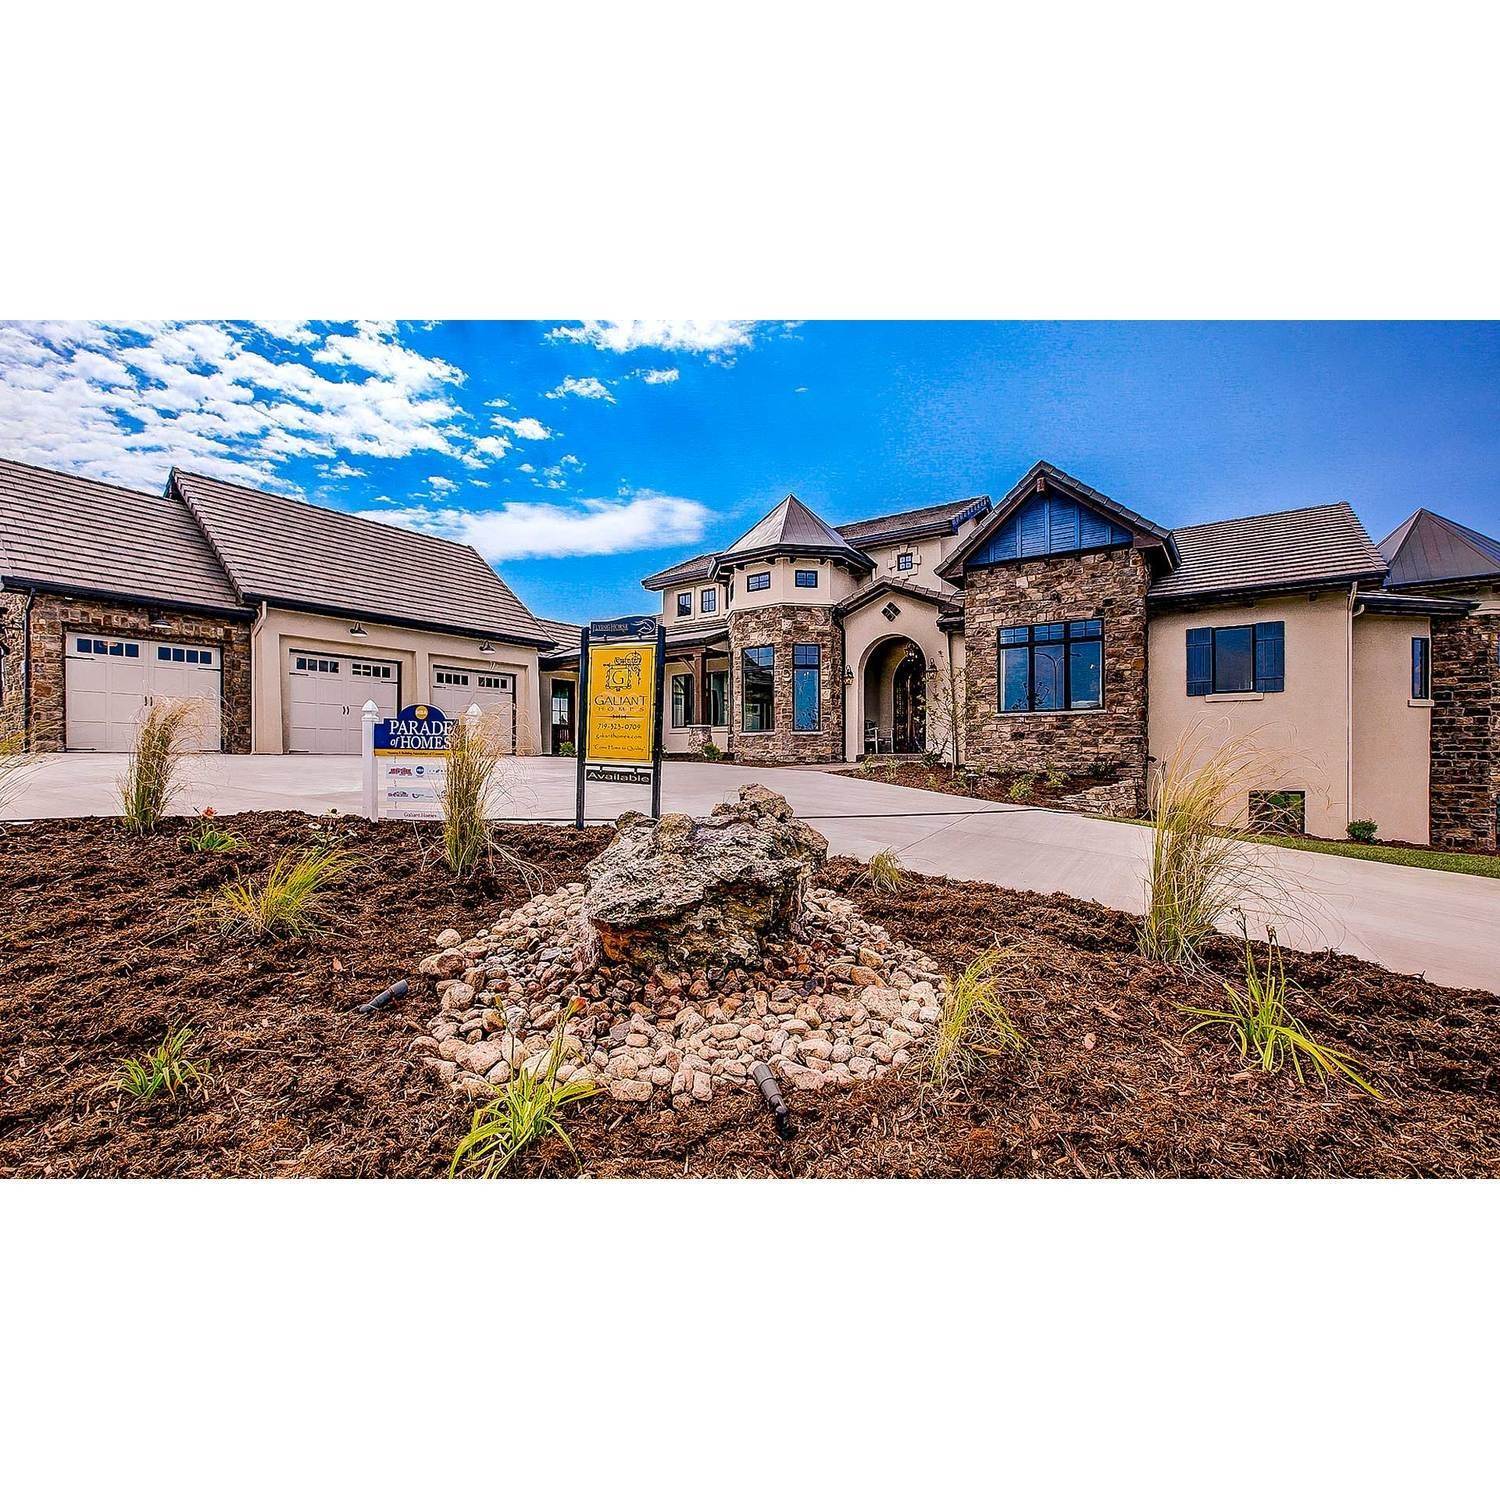 19. Galiant Homes здание в 4783 Farmingdale Dr, Colorado Springs, CO 80918